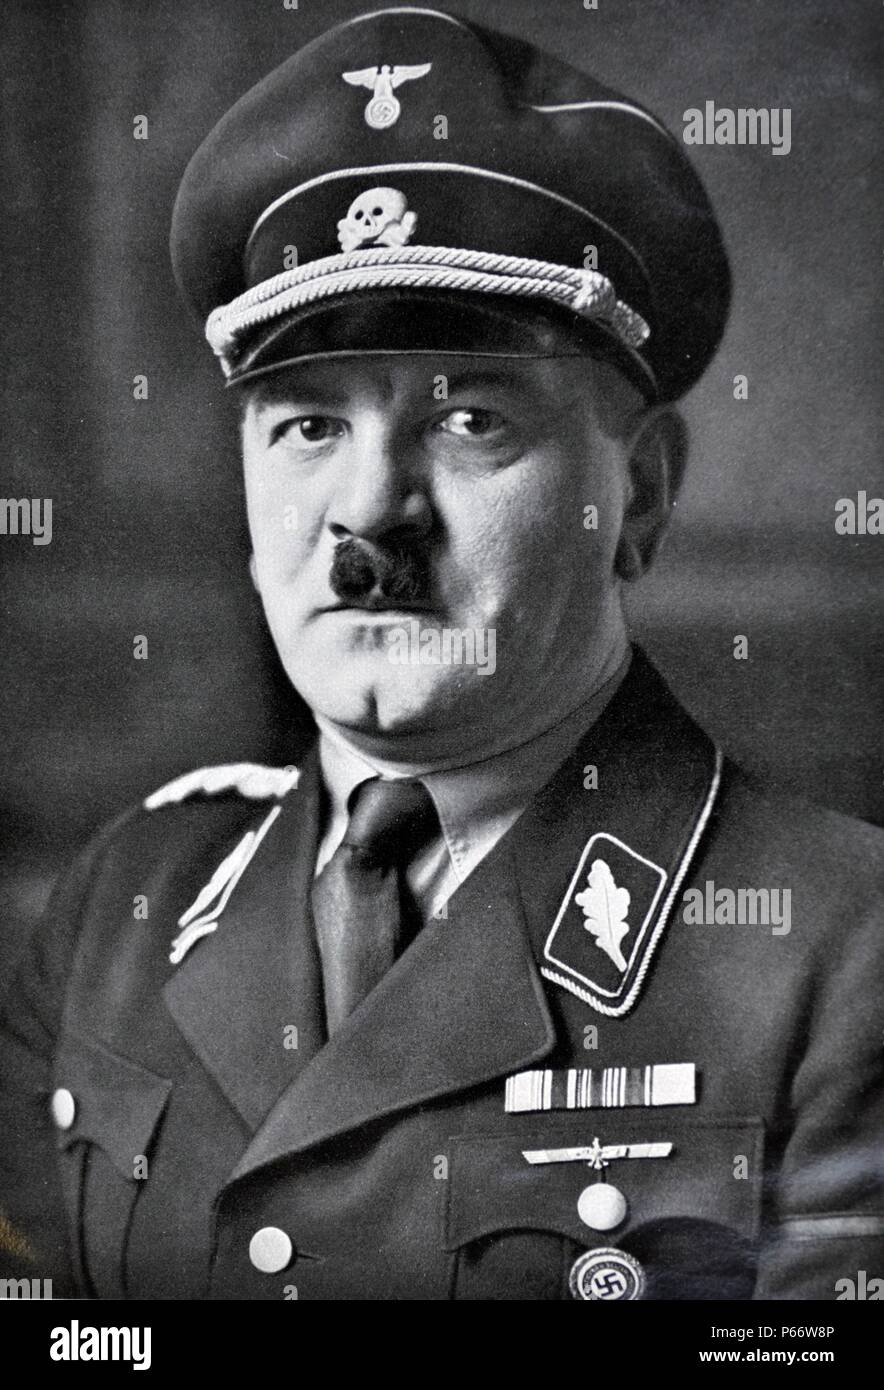 Julius Schreck (Juli 13, 1898 München - 16. Mai 1936) war eine frühe NSDAP-Mitglied und auch der erste Kommandant der Schutzstaffel (SS). Stockfoto